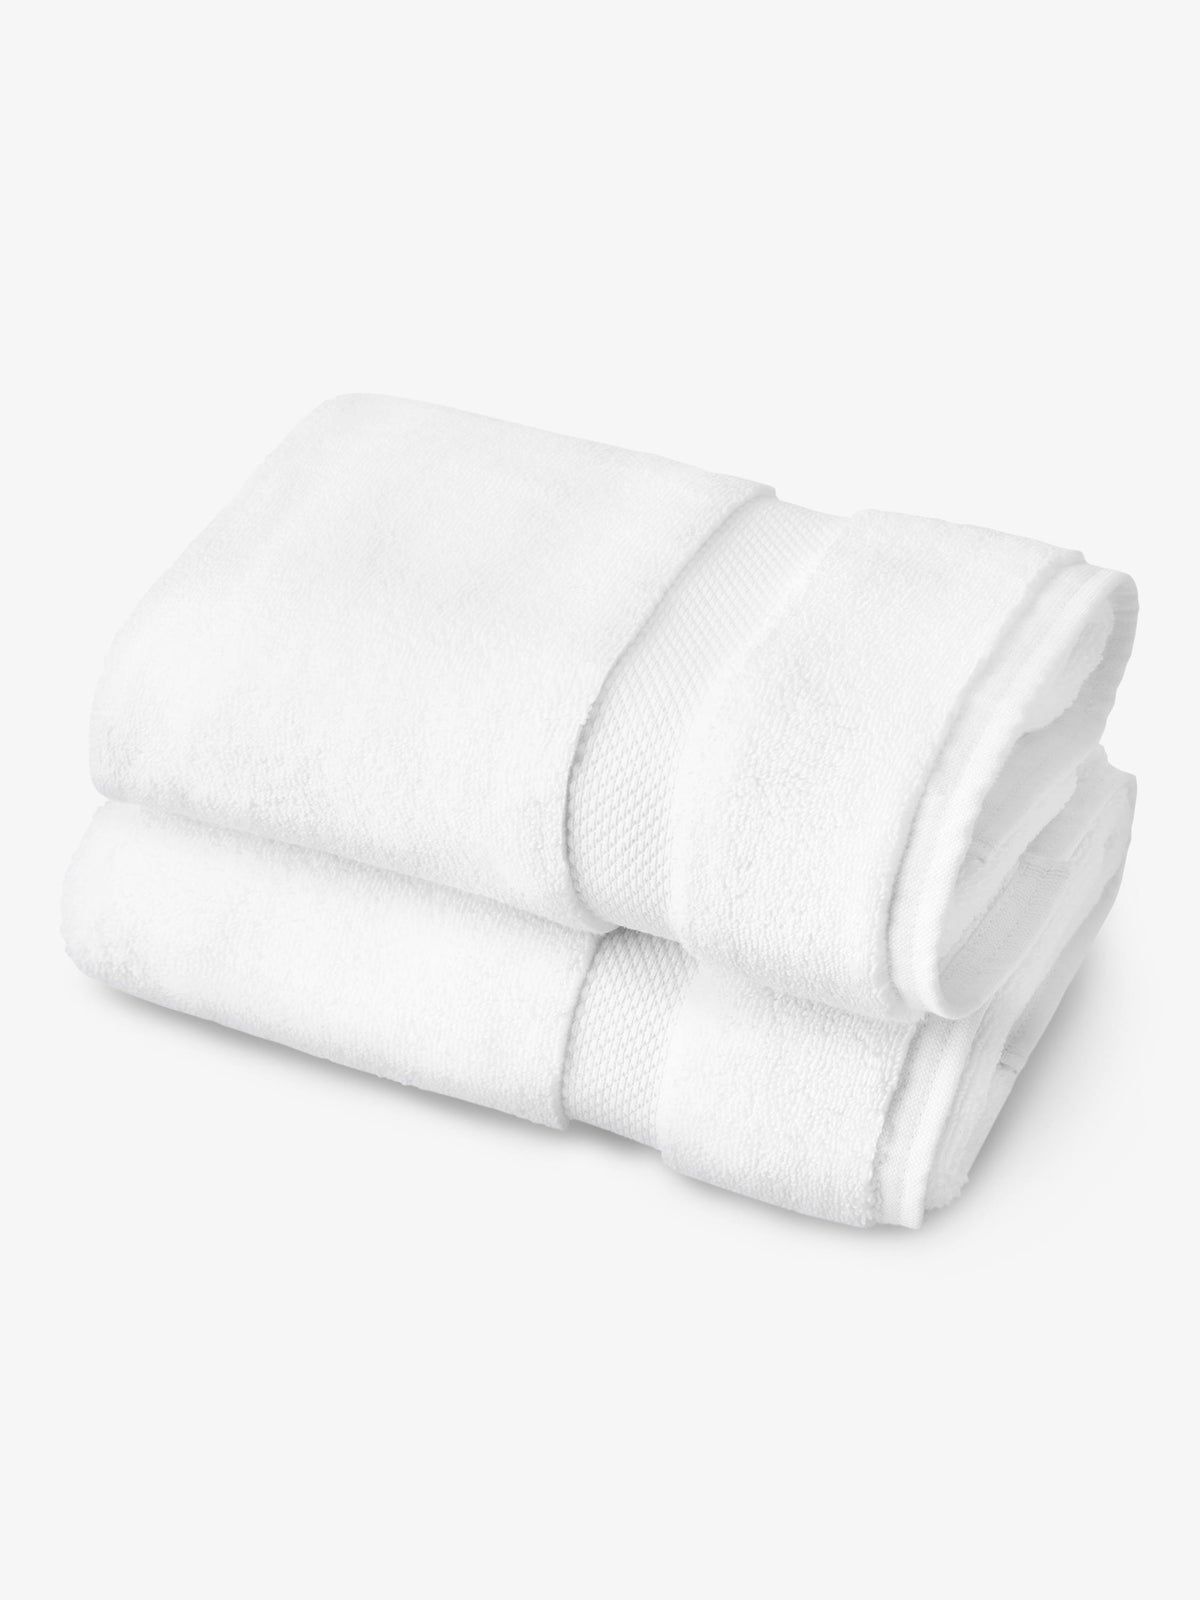 https://lagunabeachtextileco.com/cdn/shop/products/Bath-Towel-Pair_White_1200x1600.jpg?v=1637620937